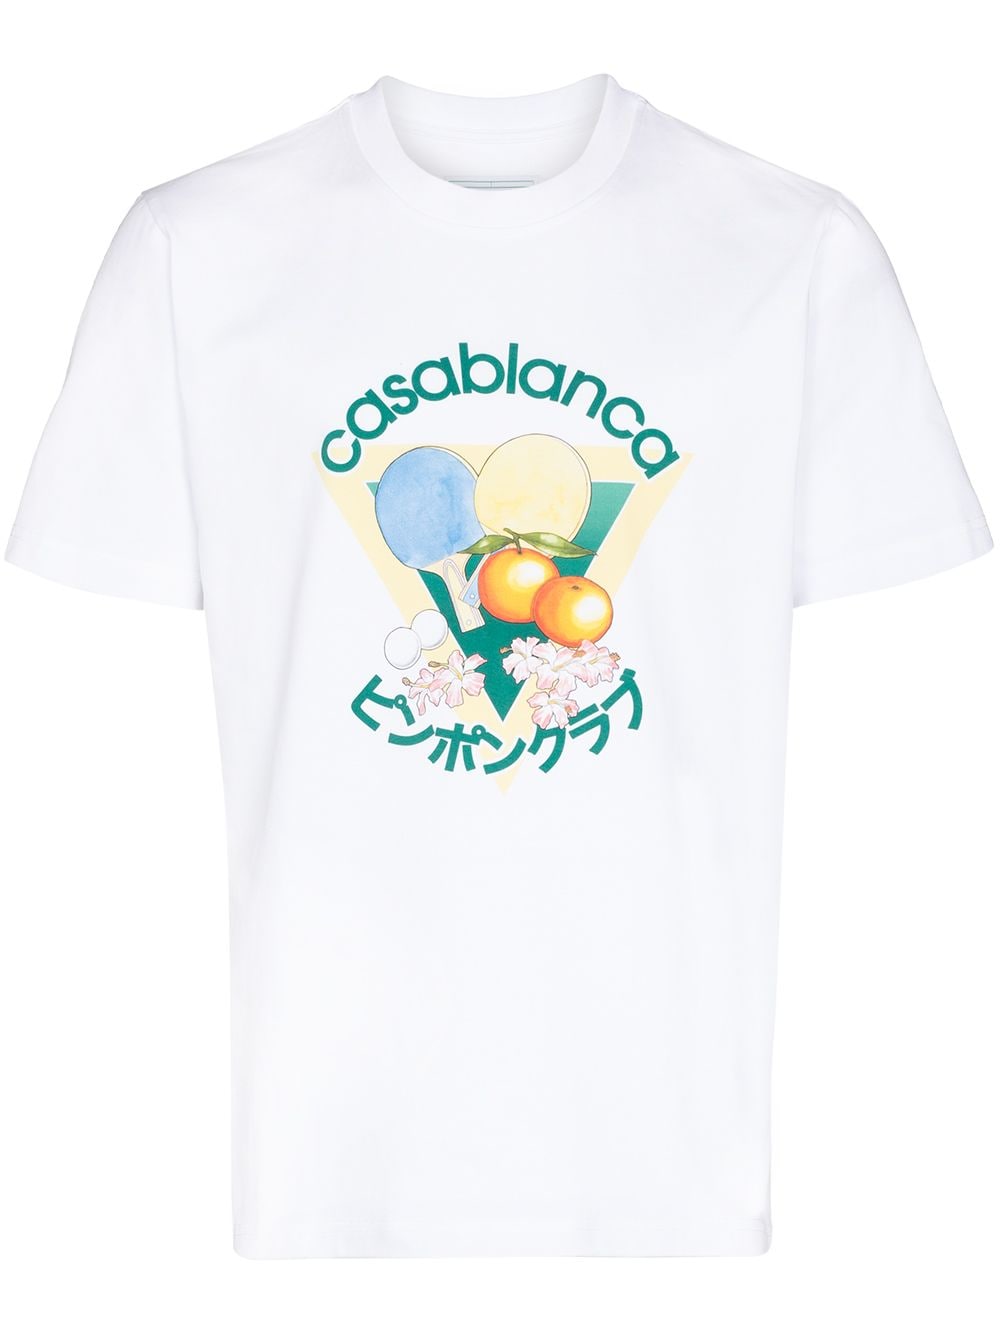 фото Casablanca футболка с принтом ping pong